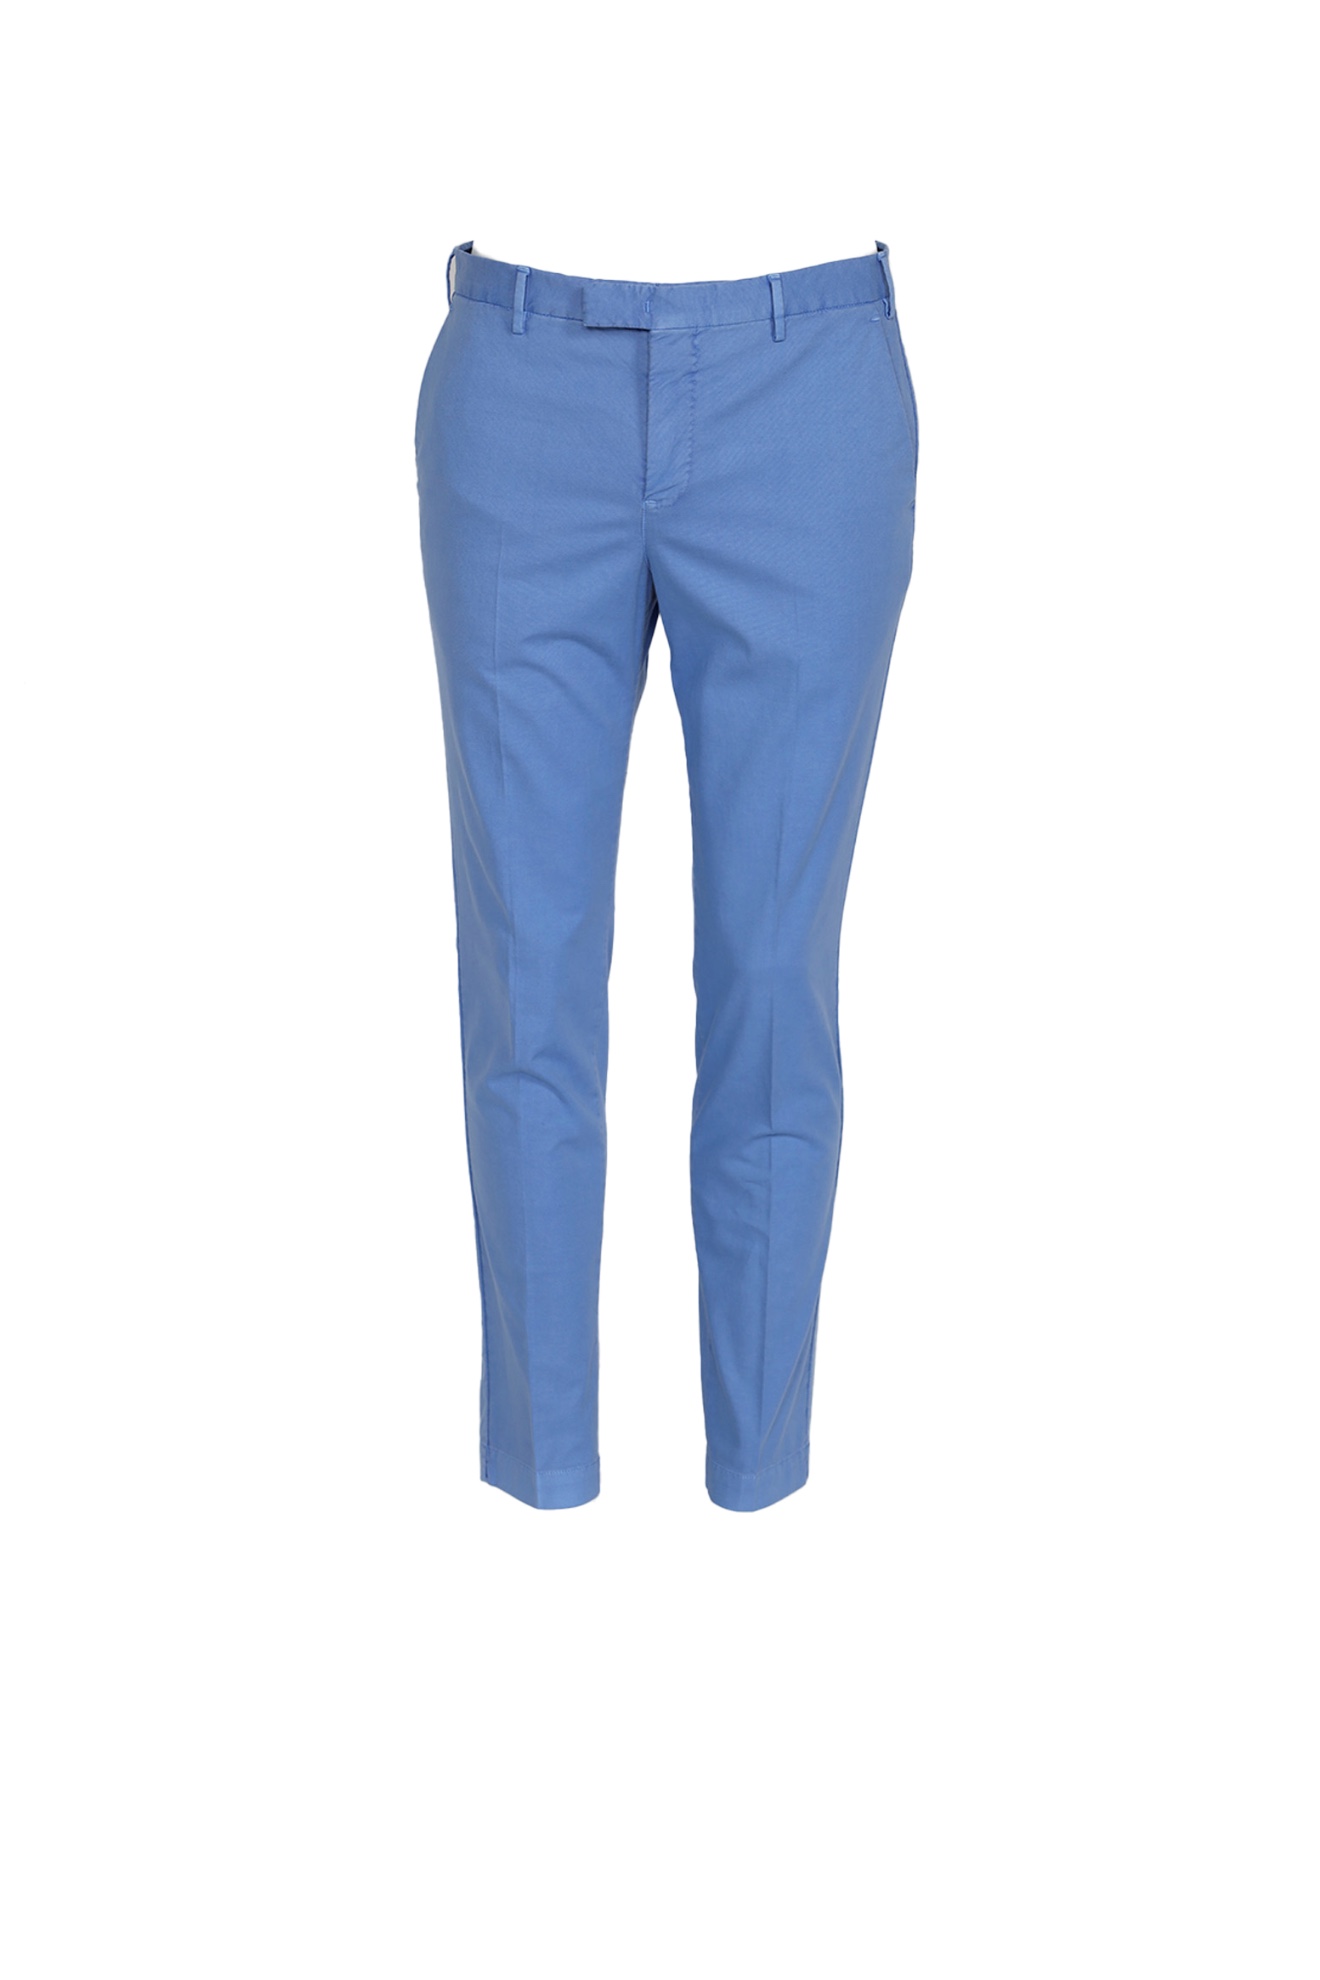 PT Torino Pantaloni stile chino con piega in cotone blu 48